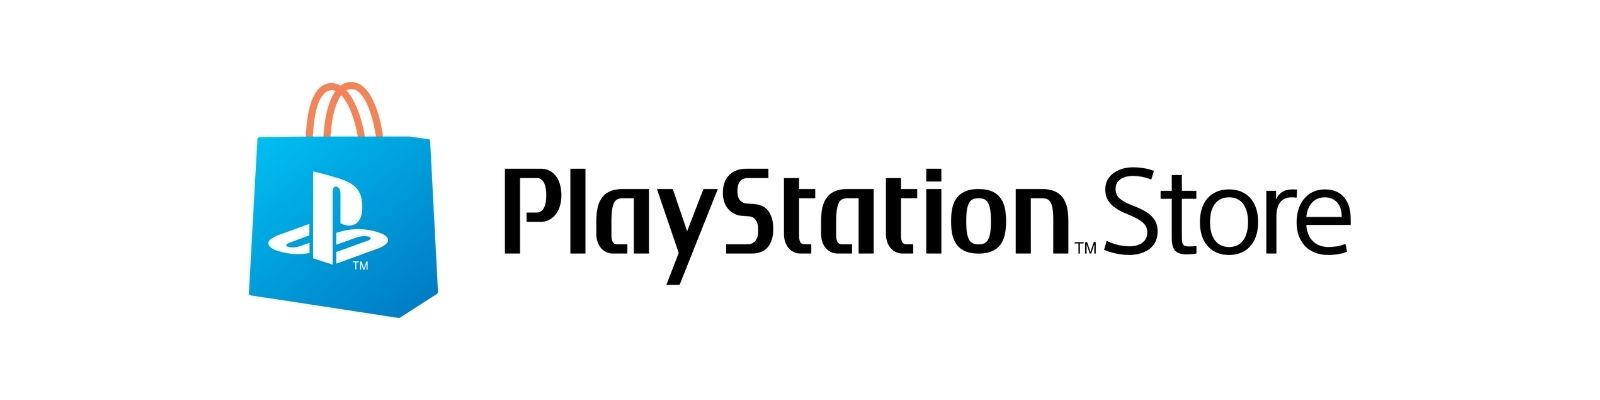 PlayStation Store é confiável? Confira tudo sobre a loja!